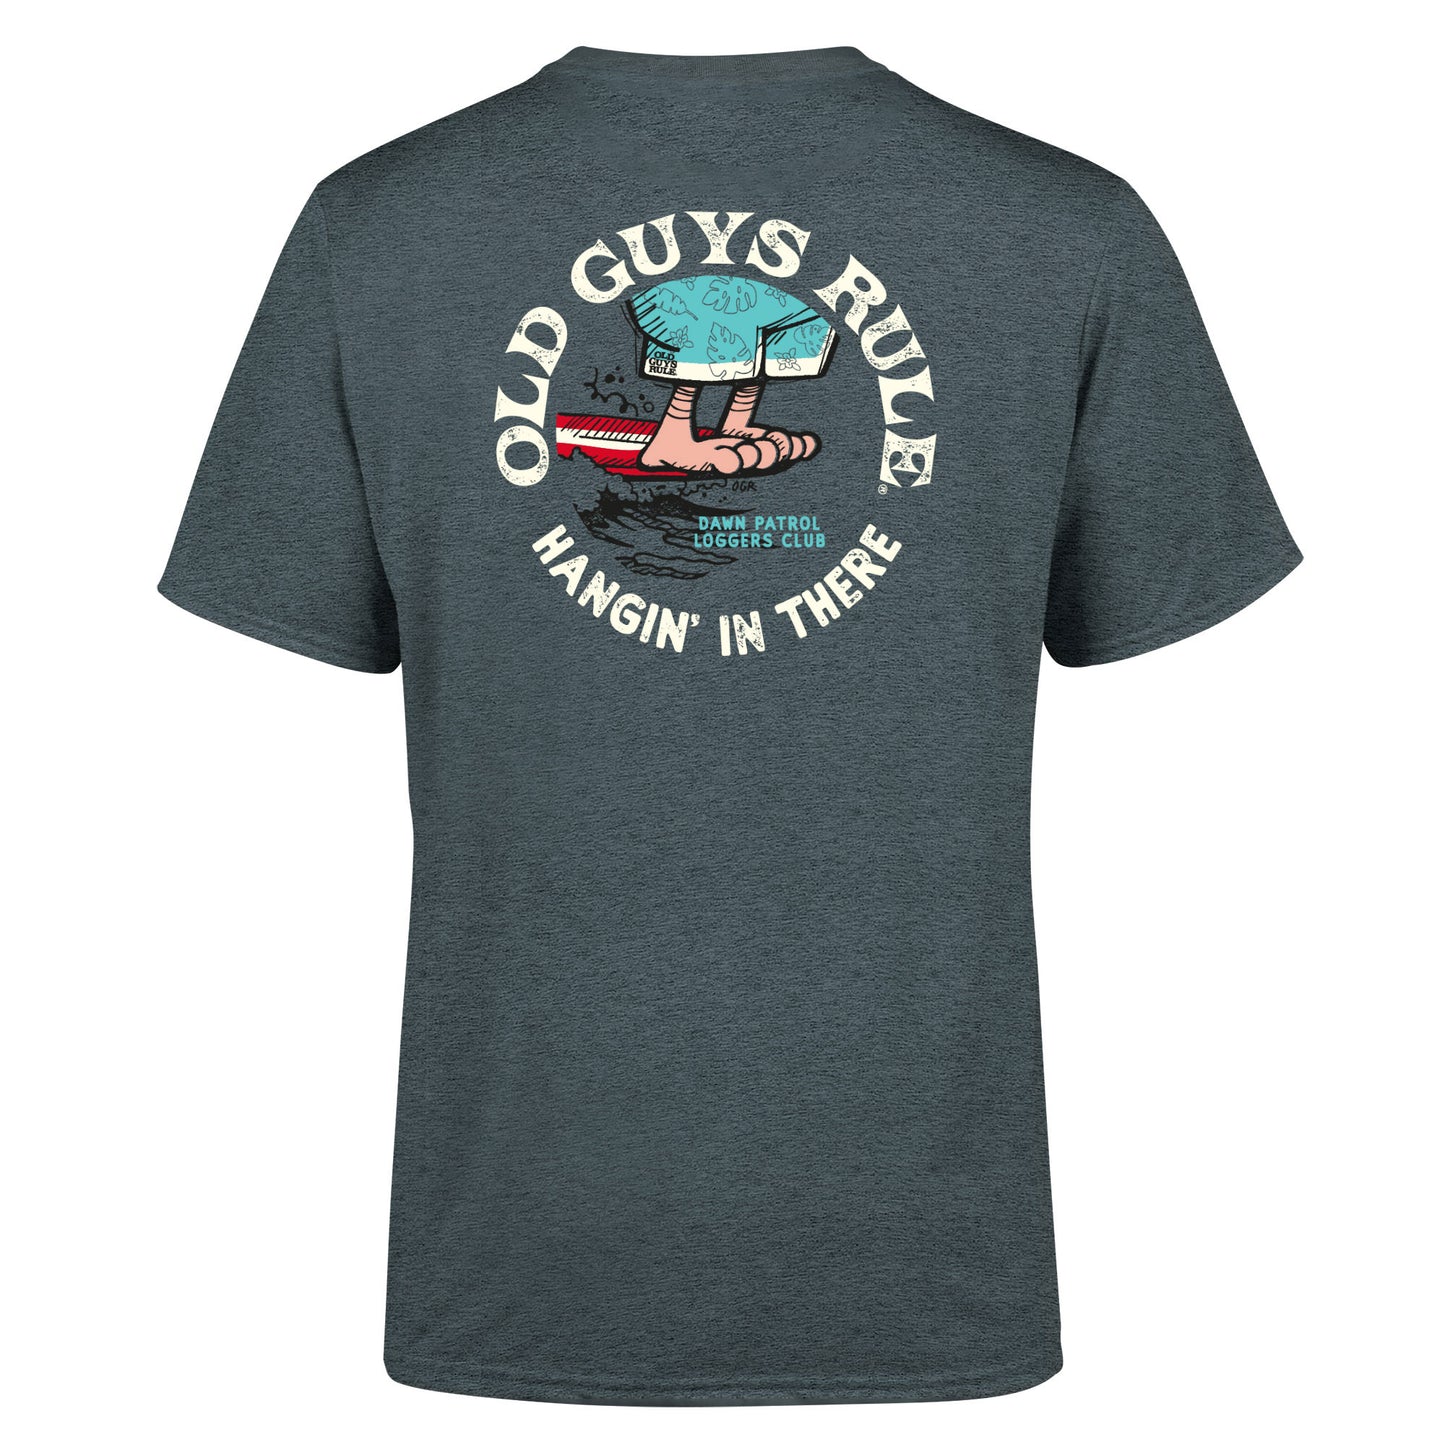 Old Guys Rule T-Shirt - D.P.L.C